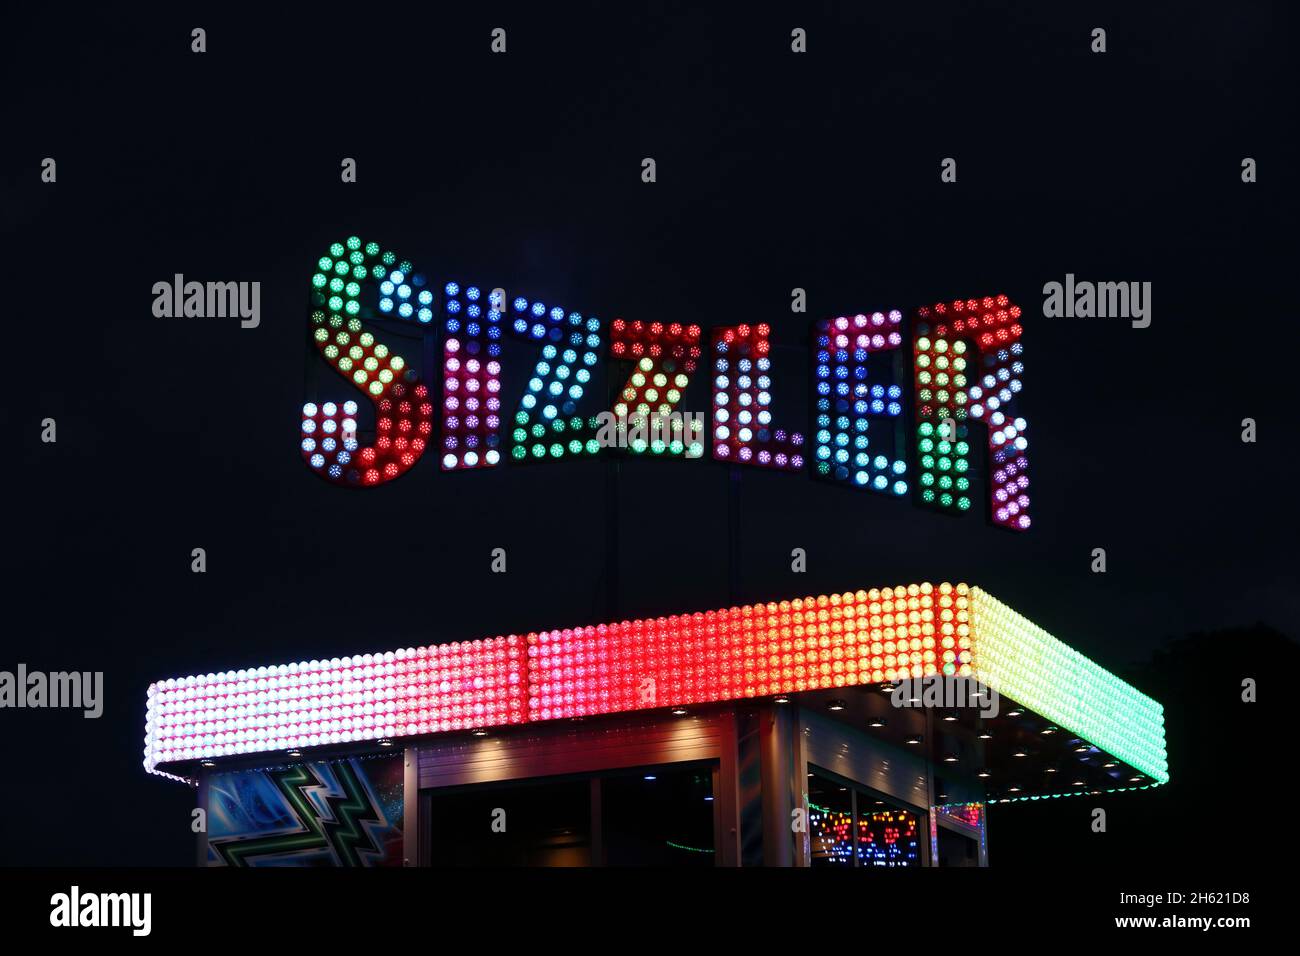 Illuminated Sizzler sign over fairground attraction, after dark at York Balloon Fiesta 2021 Stock Photo